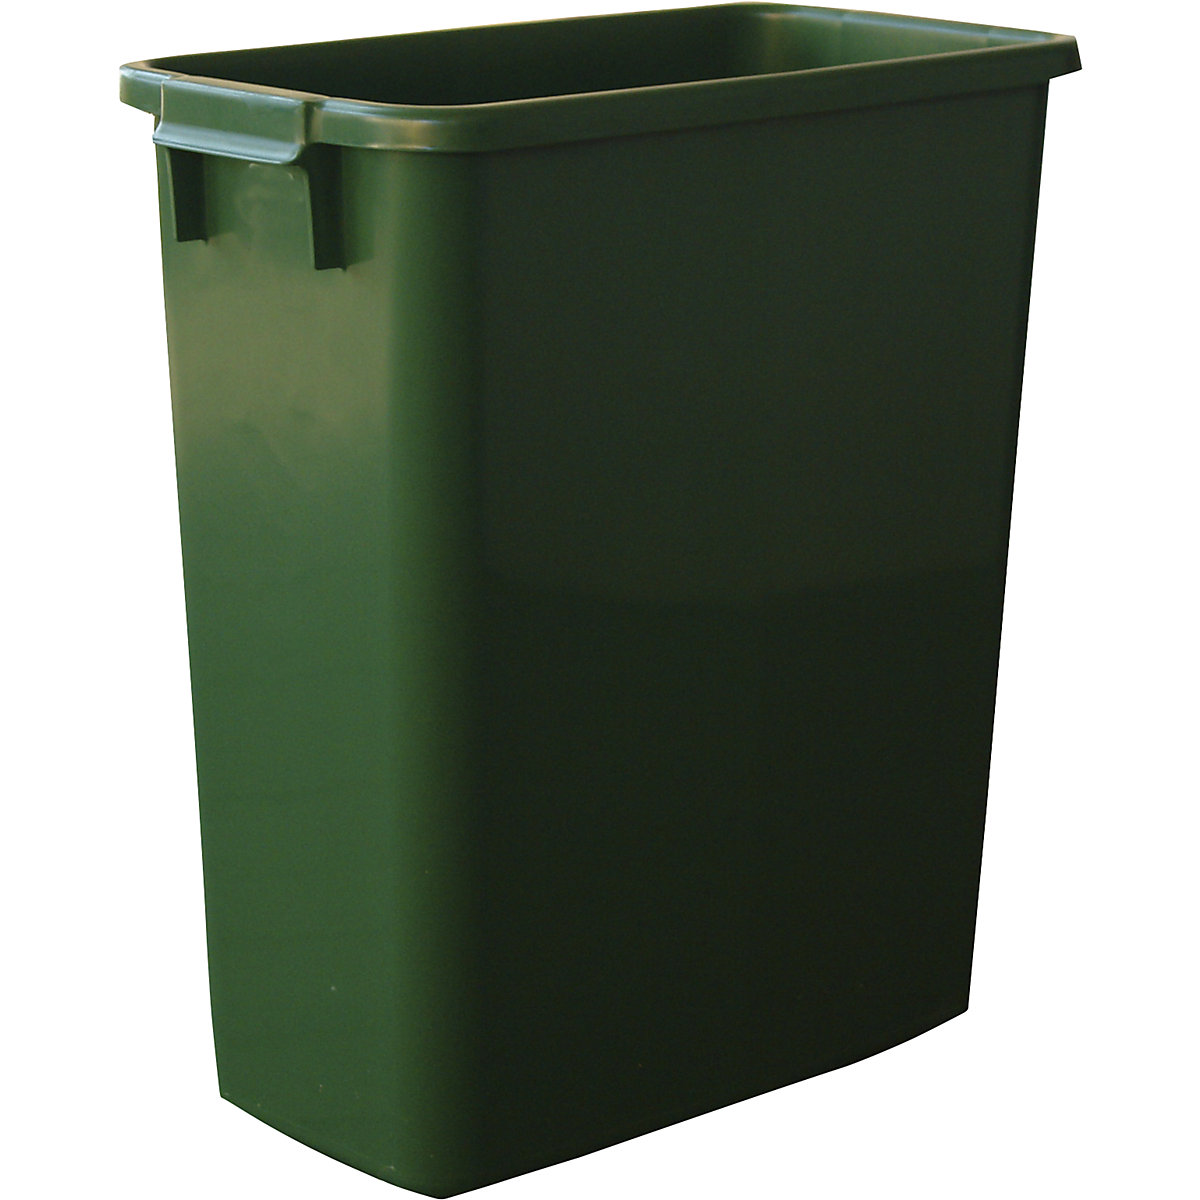 Mehrzweck-Behälter, Volumen 60 l, LxBxH 555 x 280 x 590 mm, grün-8